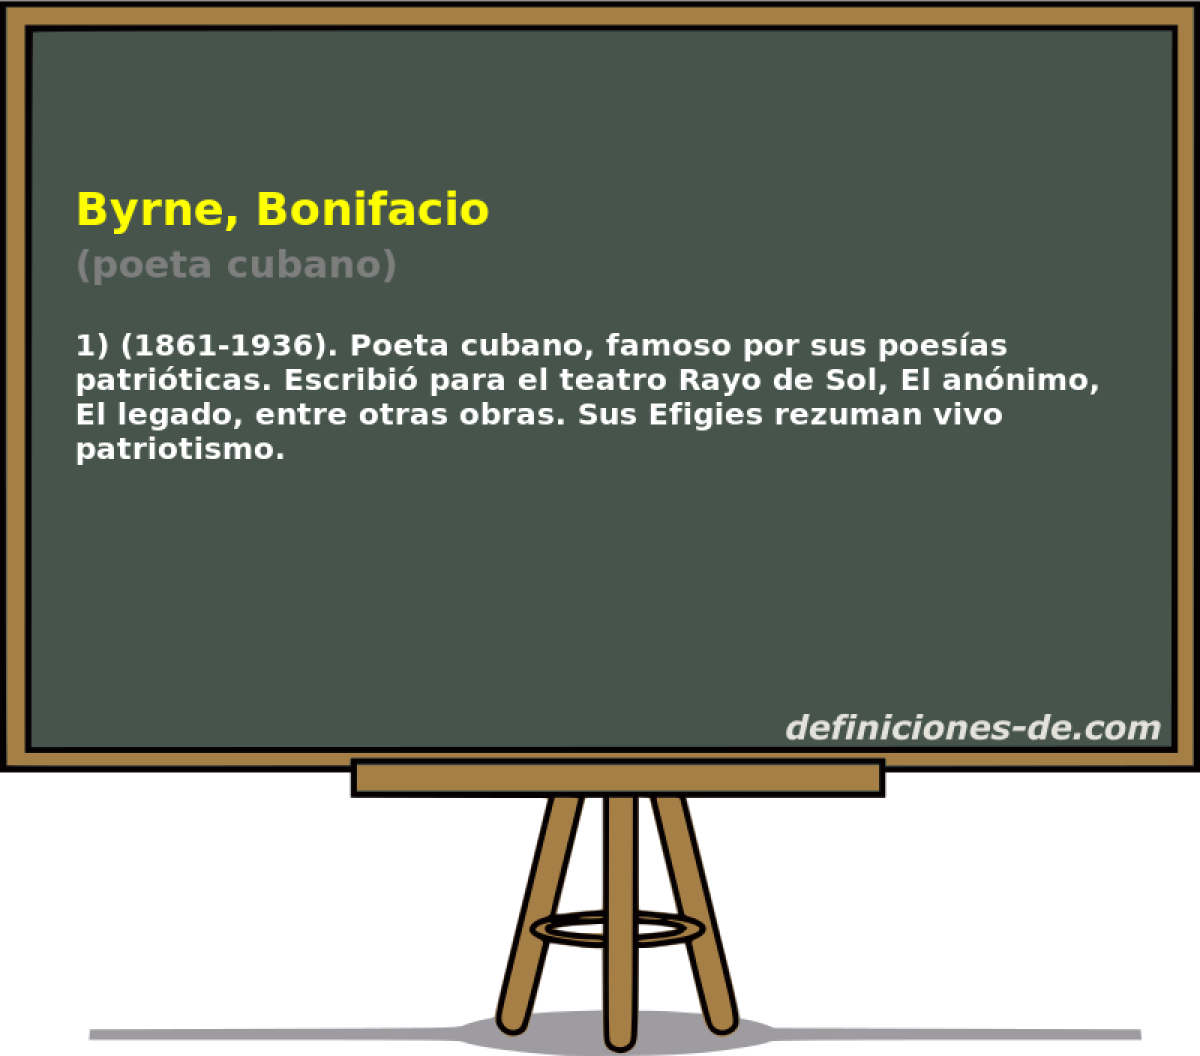 Byrne, Bonifacio (poeta cubano)